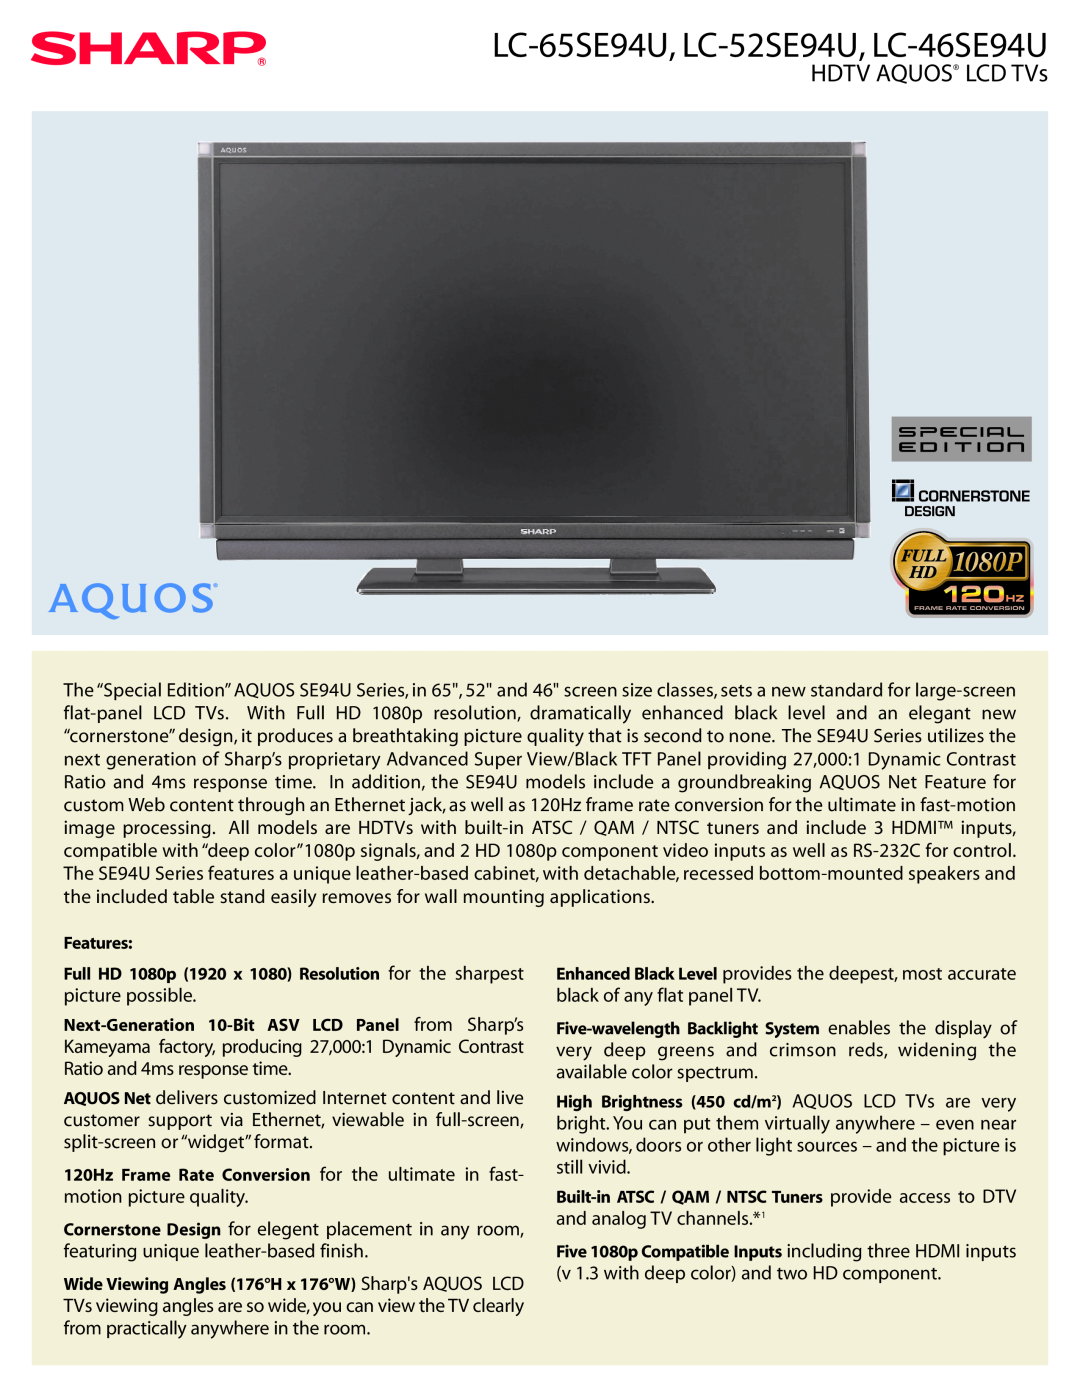 Sharp SE94U Series manual HDTV AQUOS LCD TVs, LC-65SE94U, LC-52SE94U, LC-46SE94U 